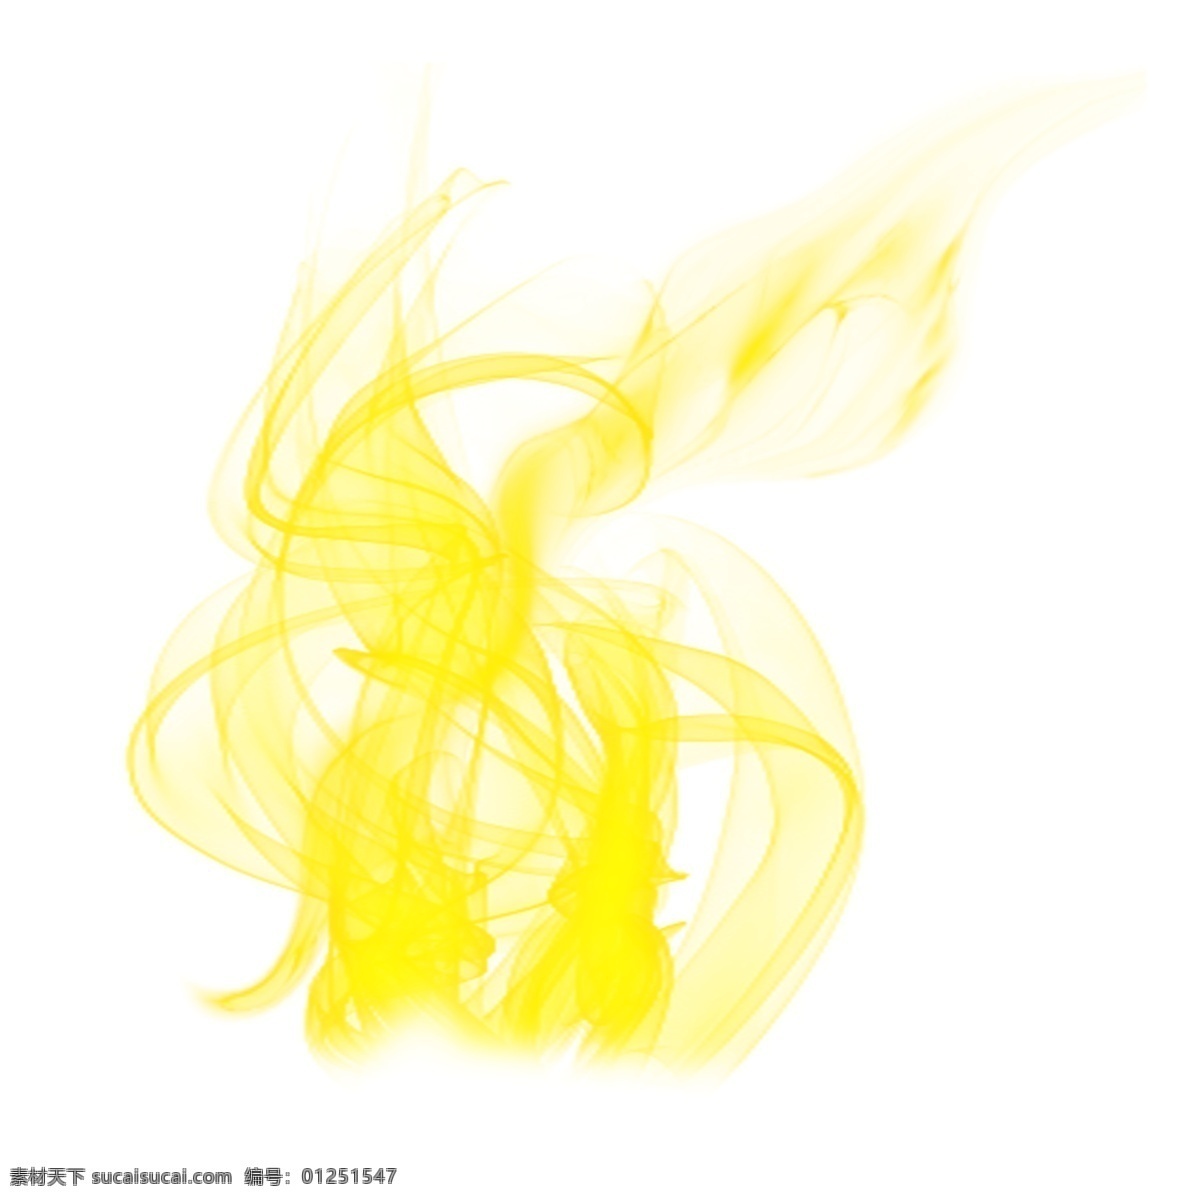 黄色 火苗 火焰 元素 火 炫酷 燃烧 烈火 火焰矢量 跳动的火焰 艺术火焰 黄色火焰